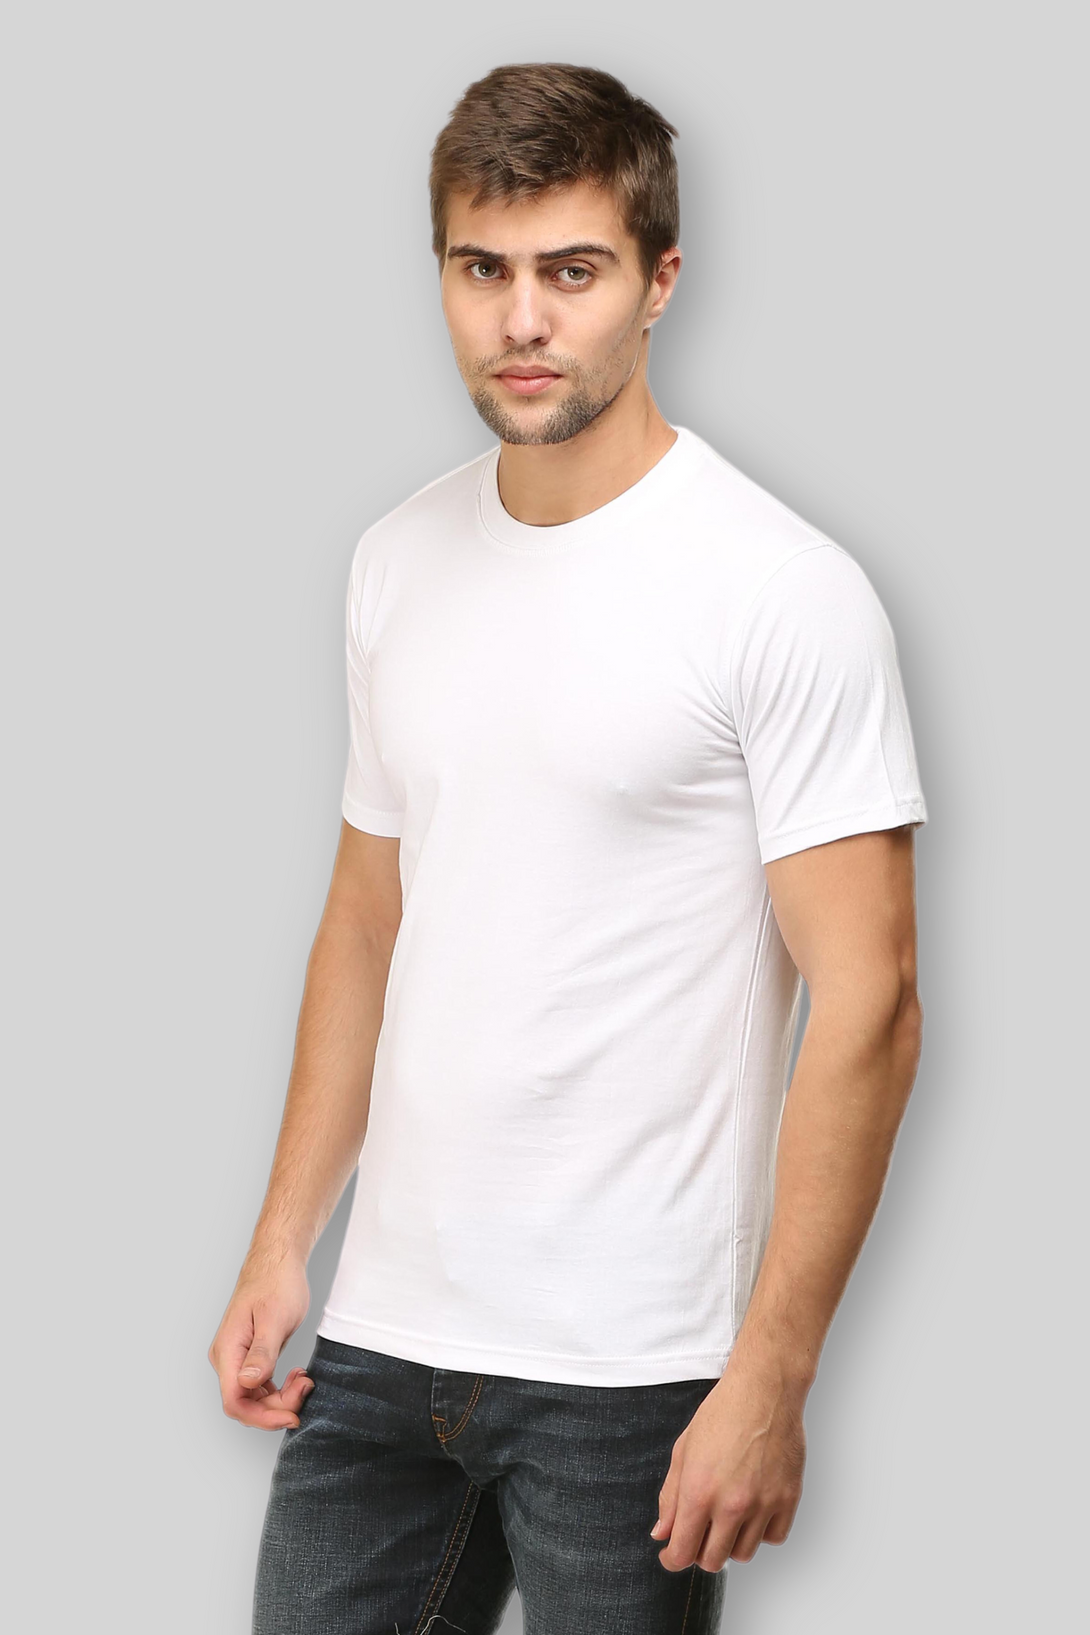 White T-Shirt For Men - WowWaves - 1